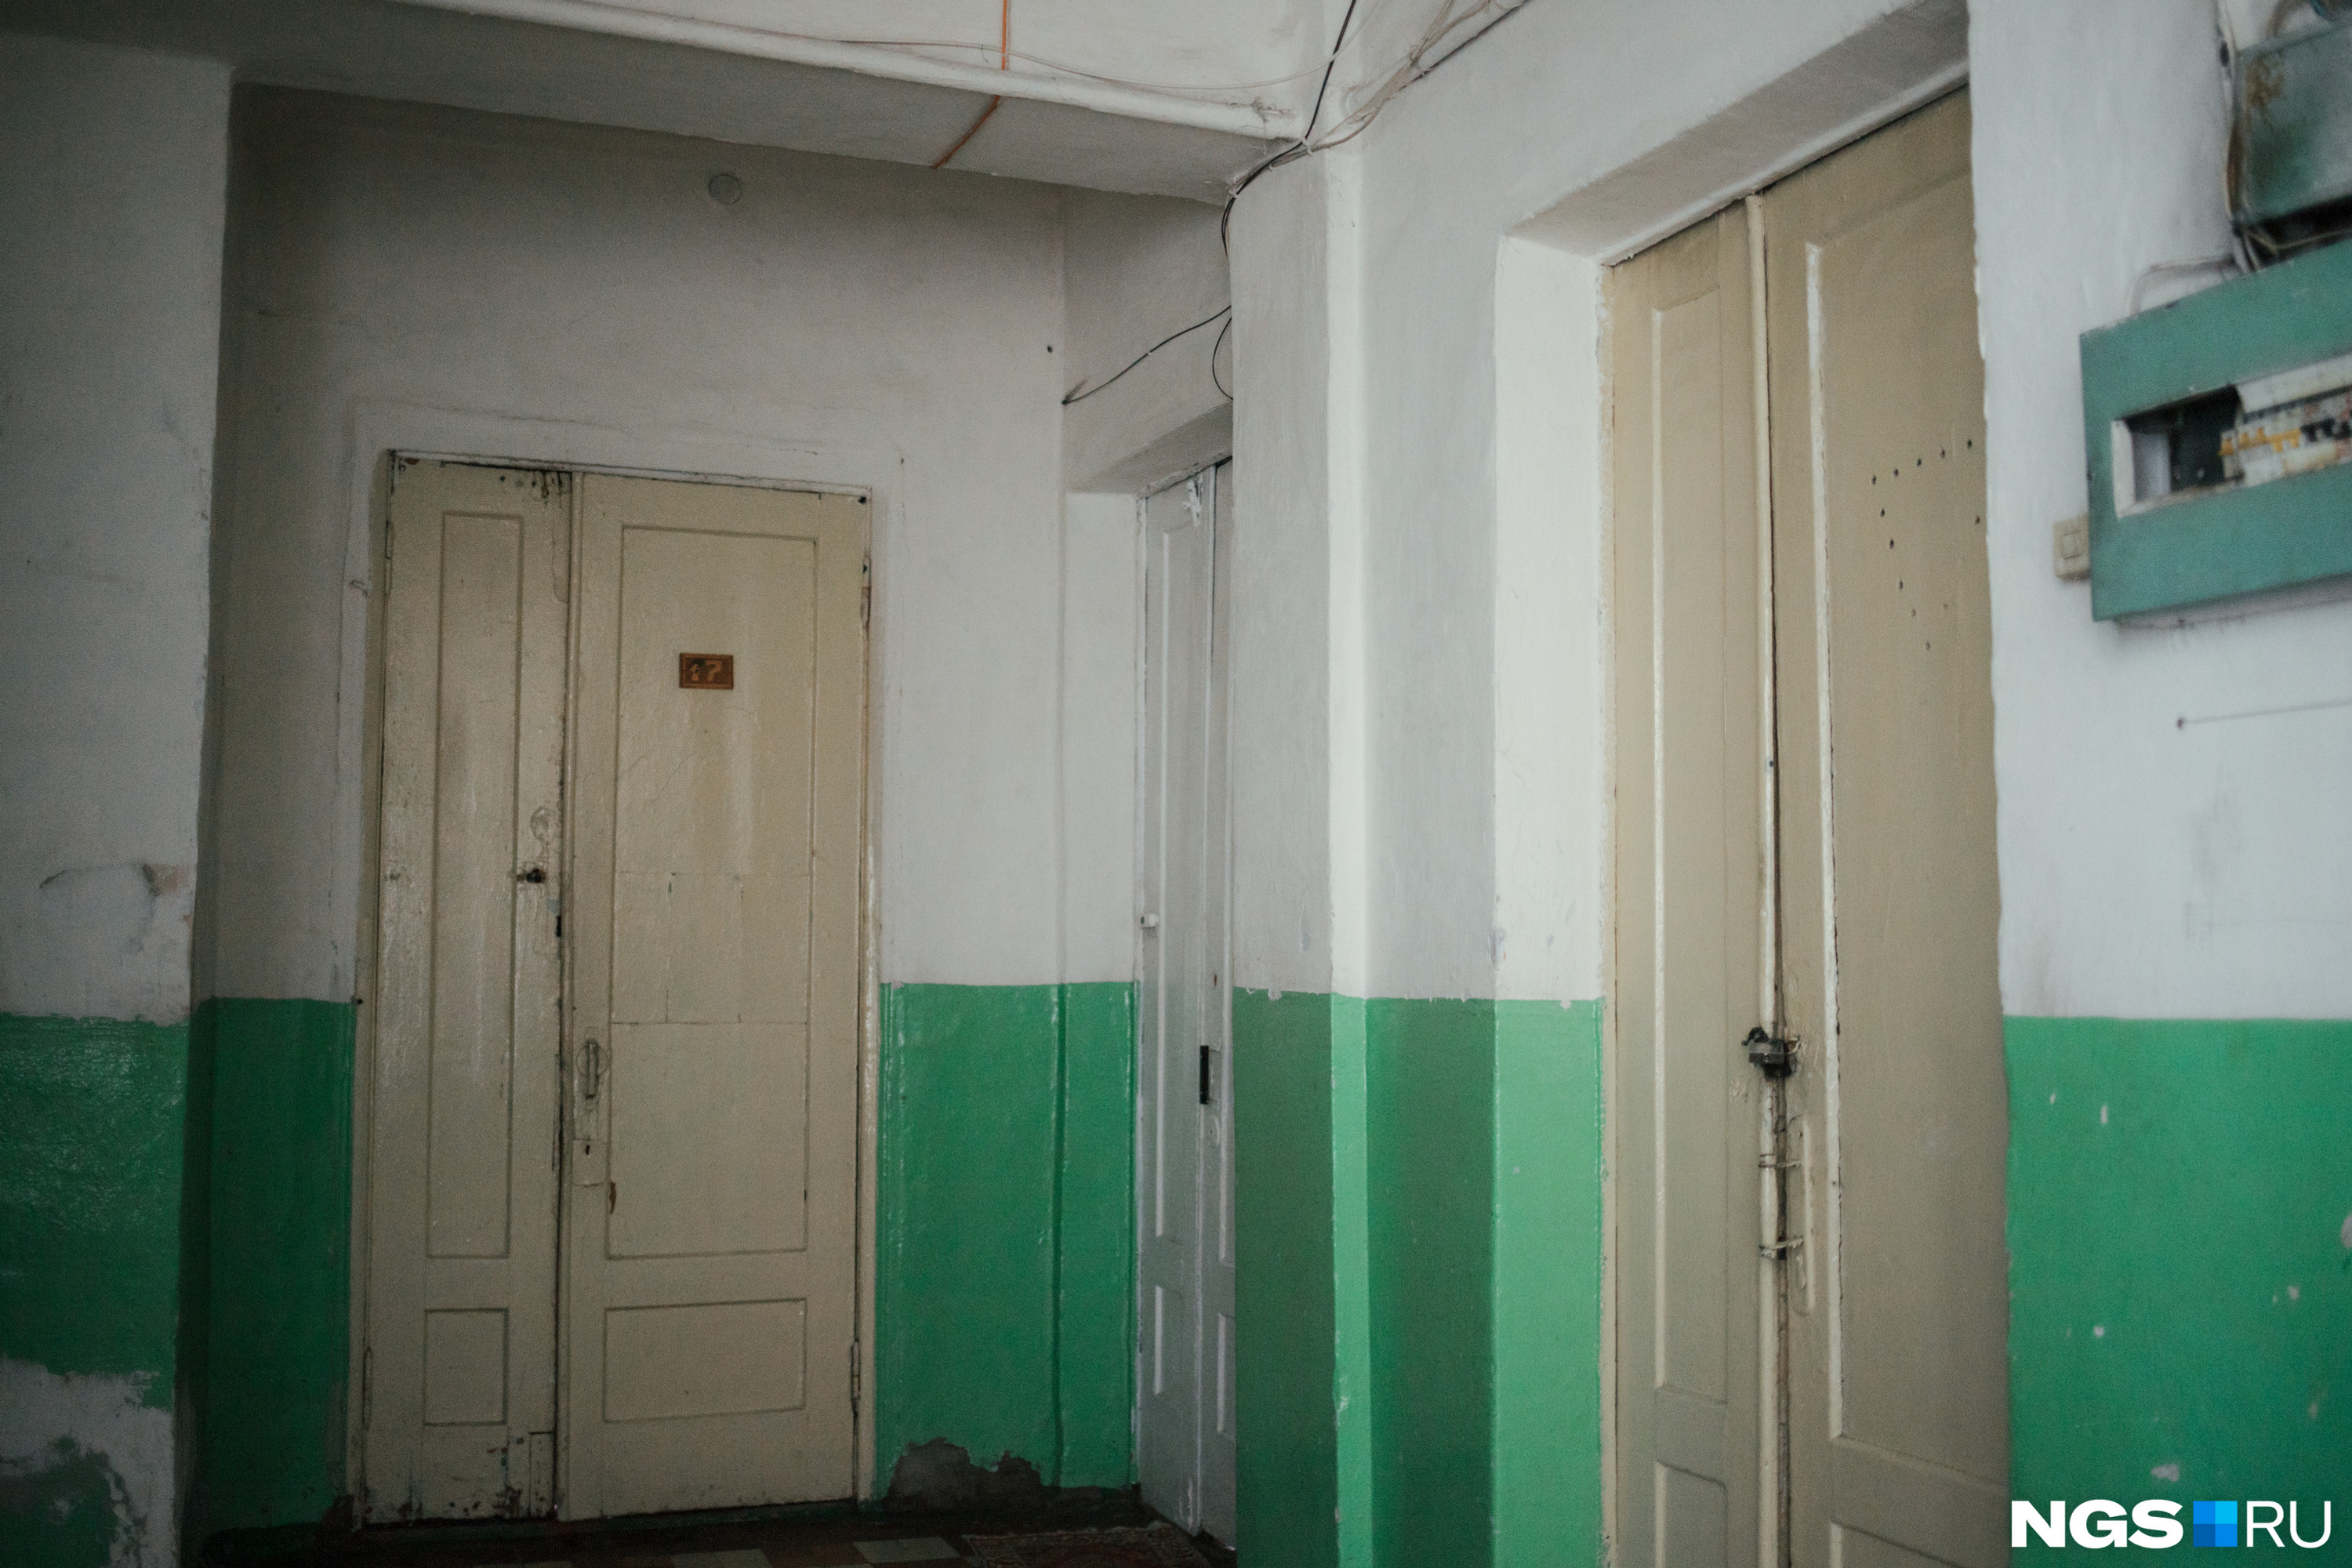 Это секционное общежитие с характерной плиткой и старыми советскими межкомнатными дверями